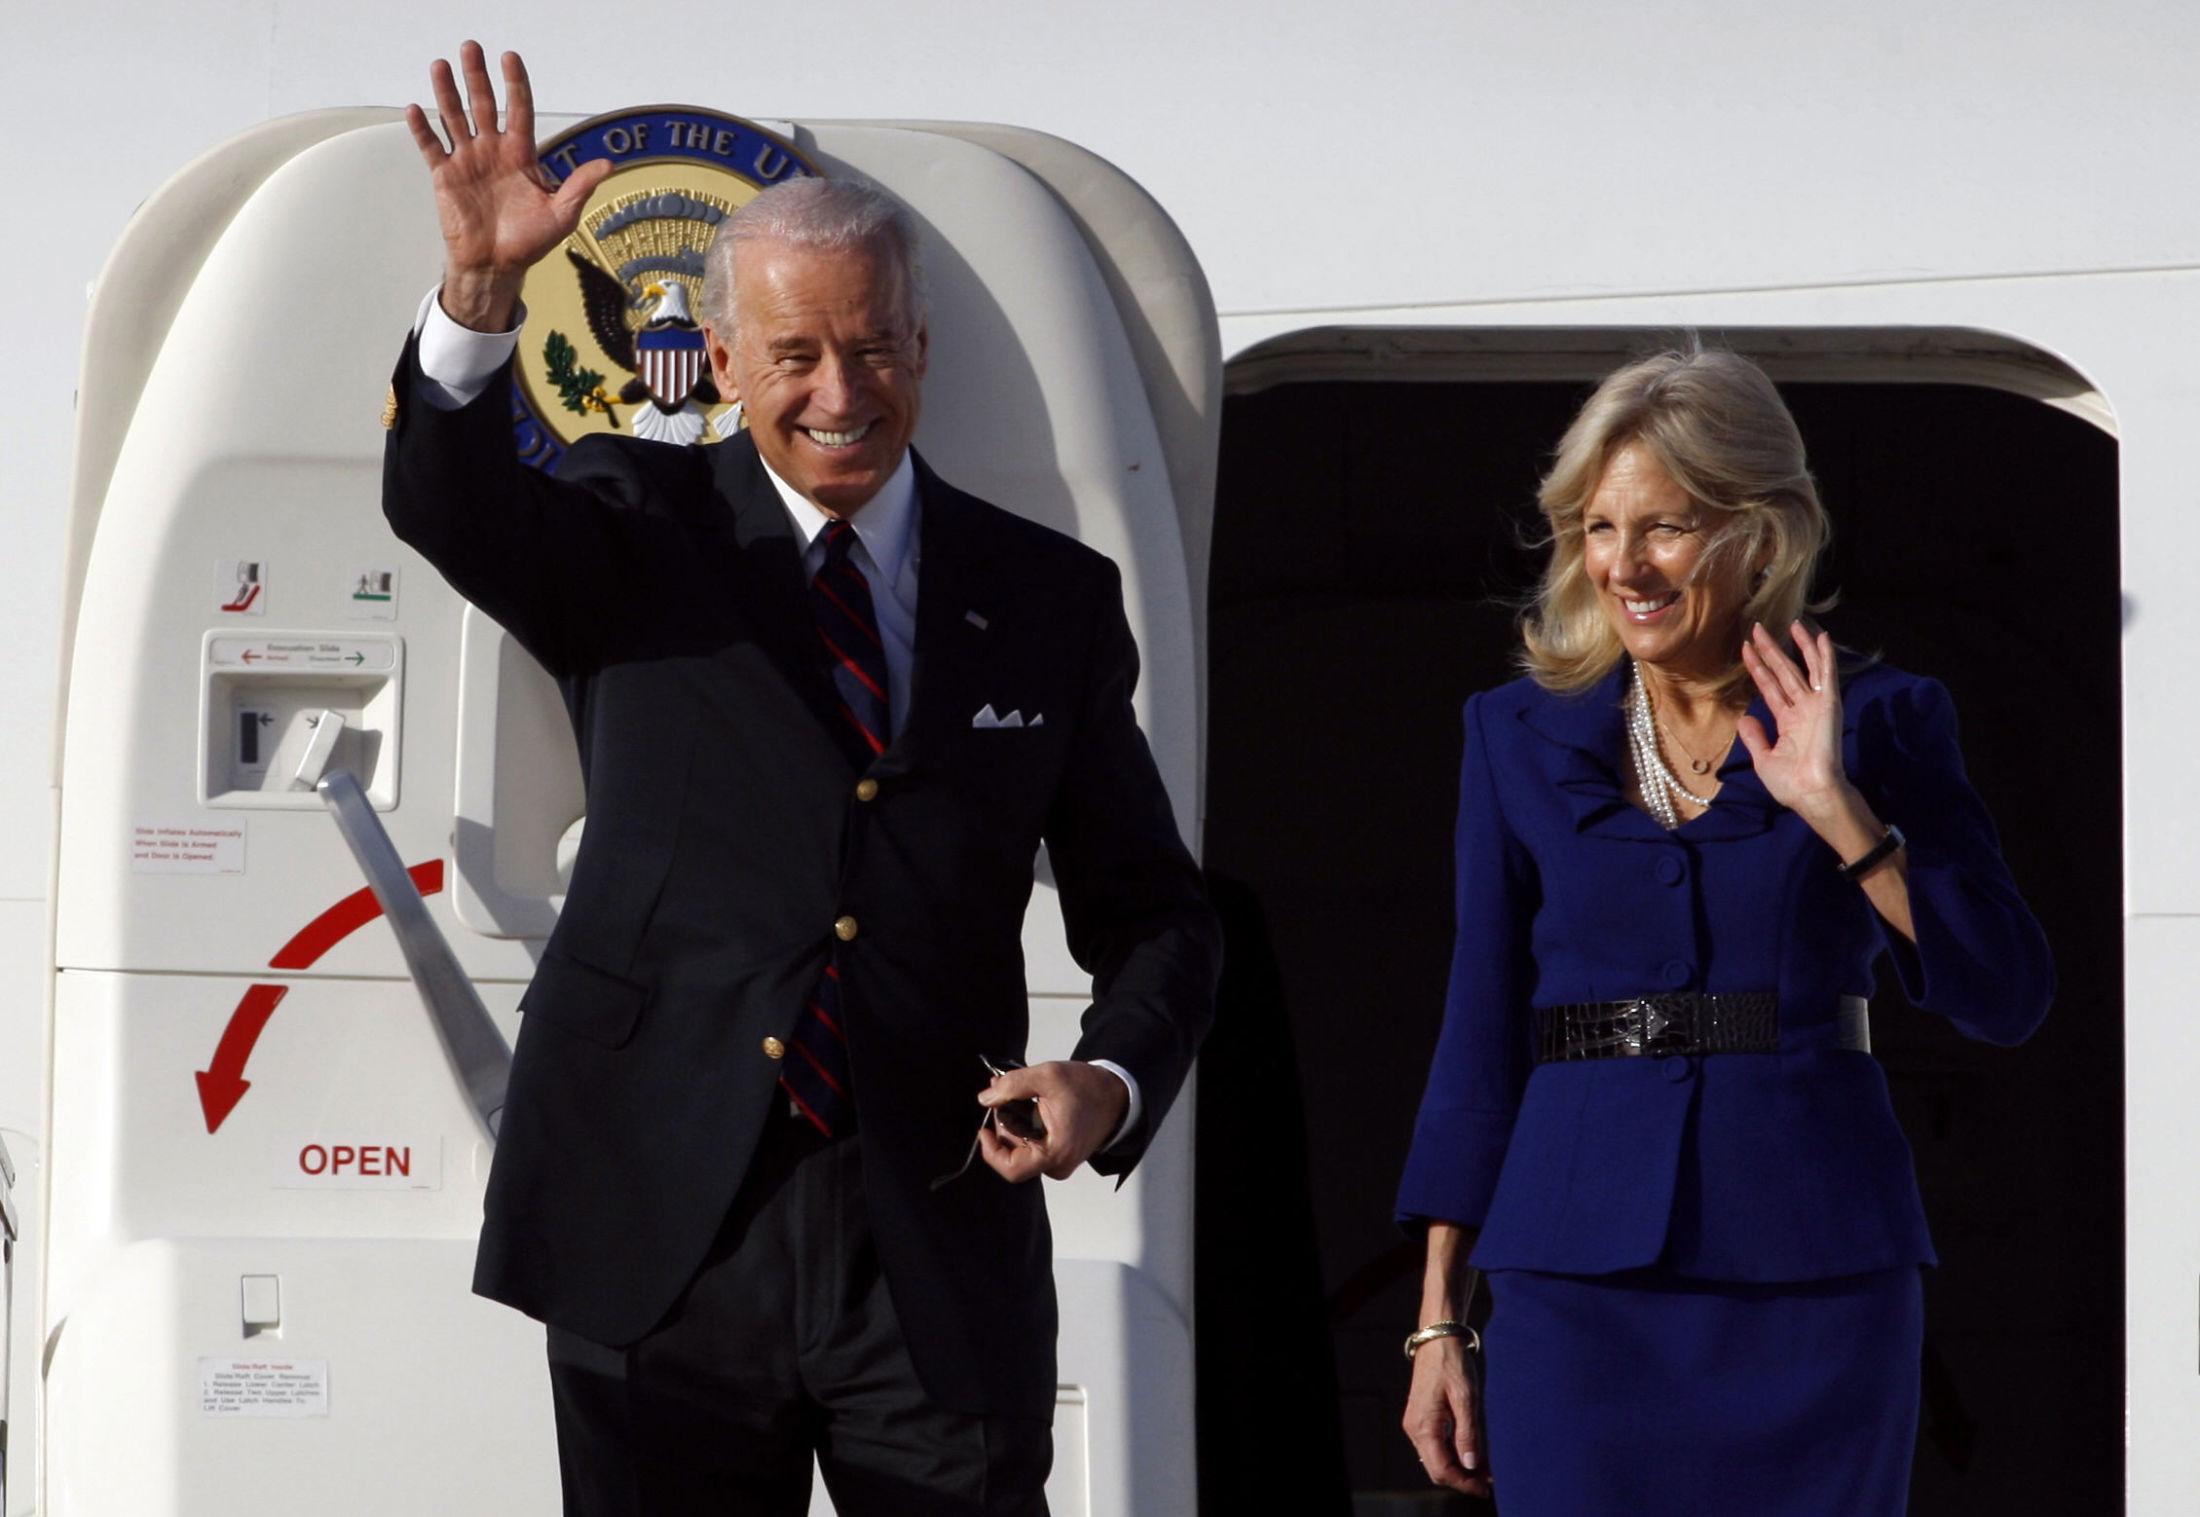 BLAZEREN PÅ: Jill Biden i 2010 i det som må kunne kalles hennes signatur-antrekk: drakt med blazer over. Foto: Baz Ratner/AFP.